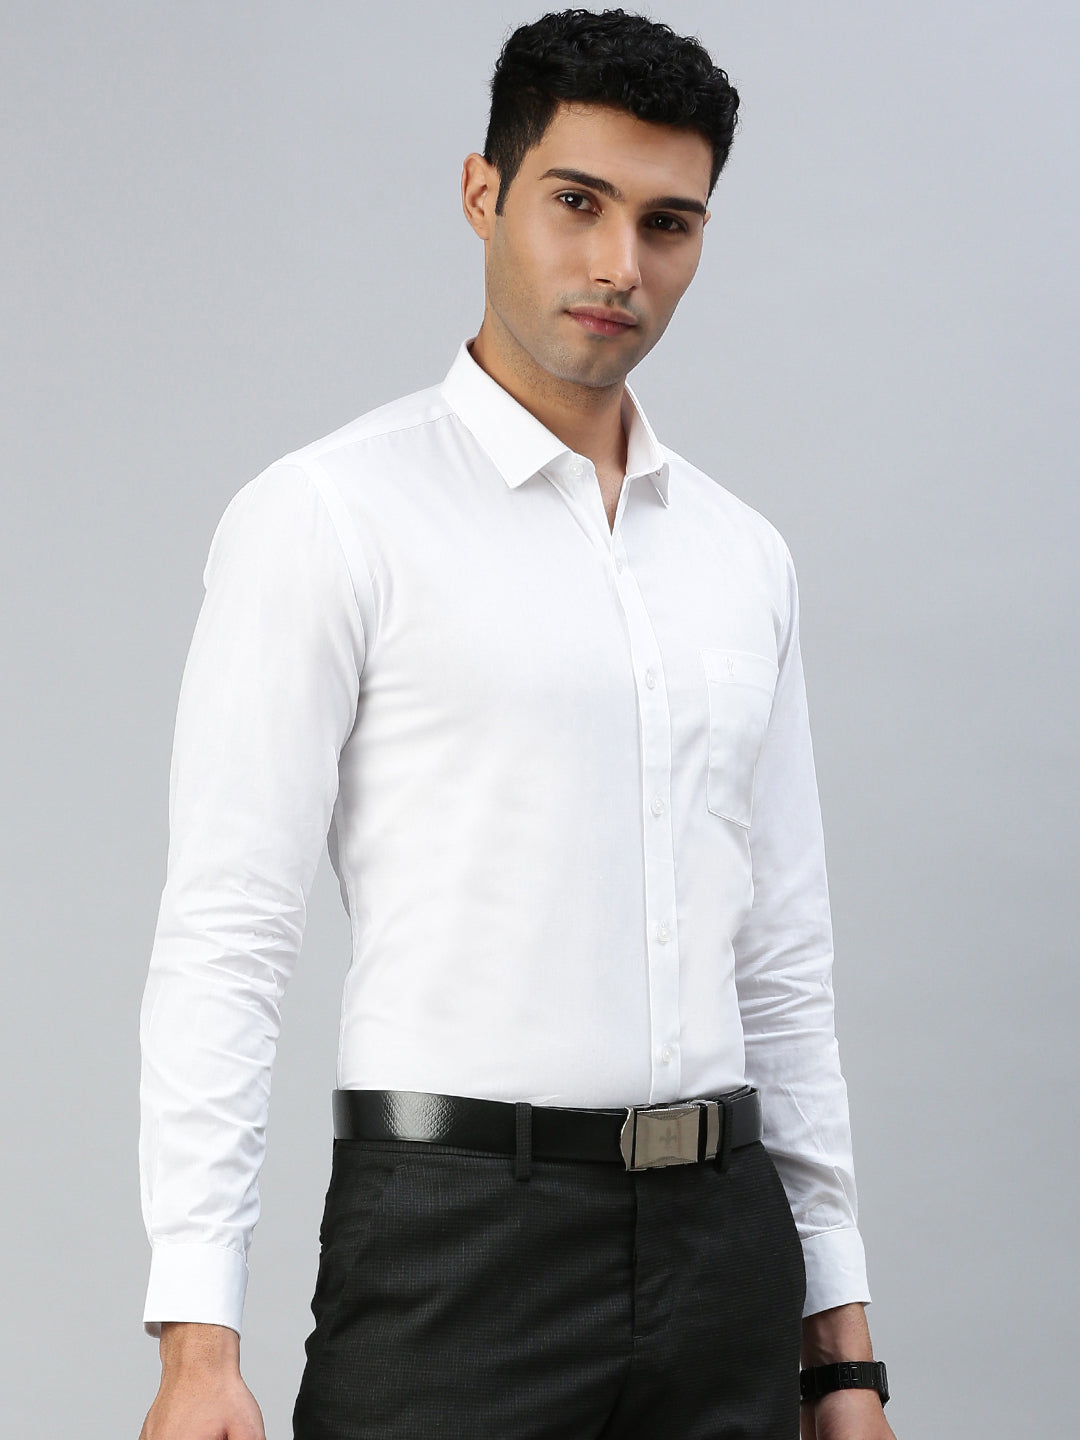 Mens 100% Cotton White Full Sleeves Shirt Winner (2 Pcs Pack)